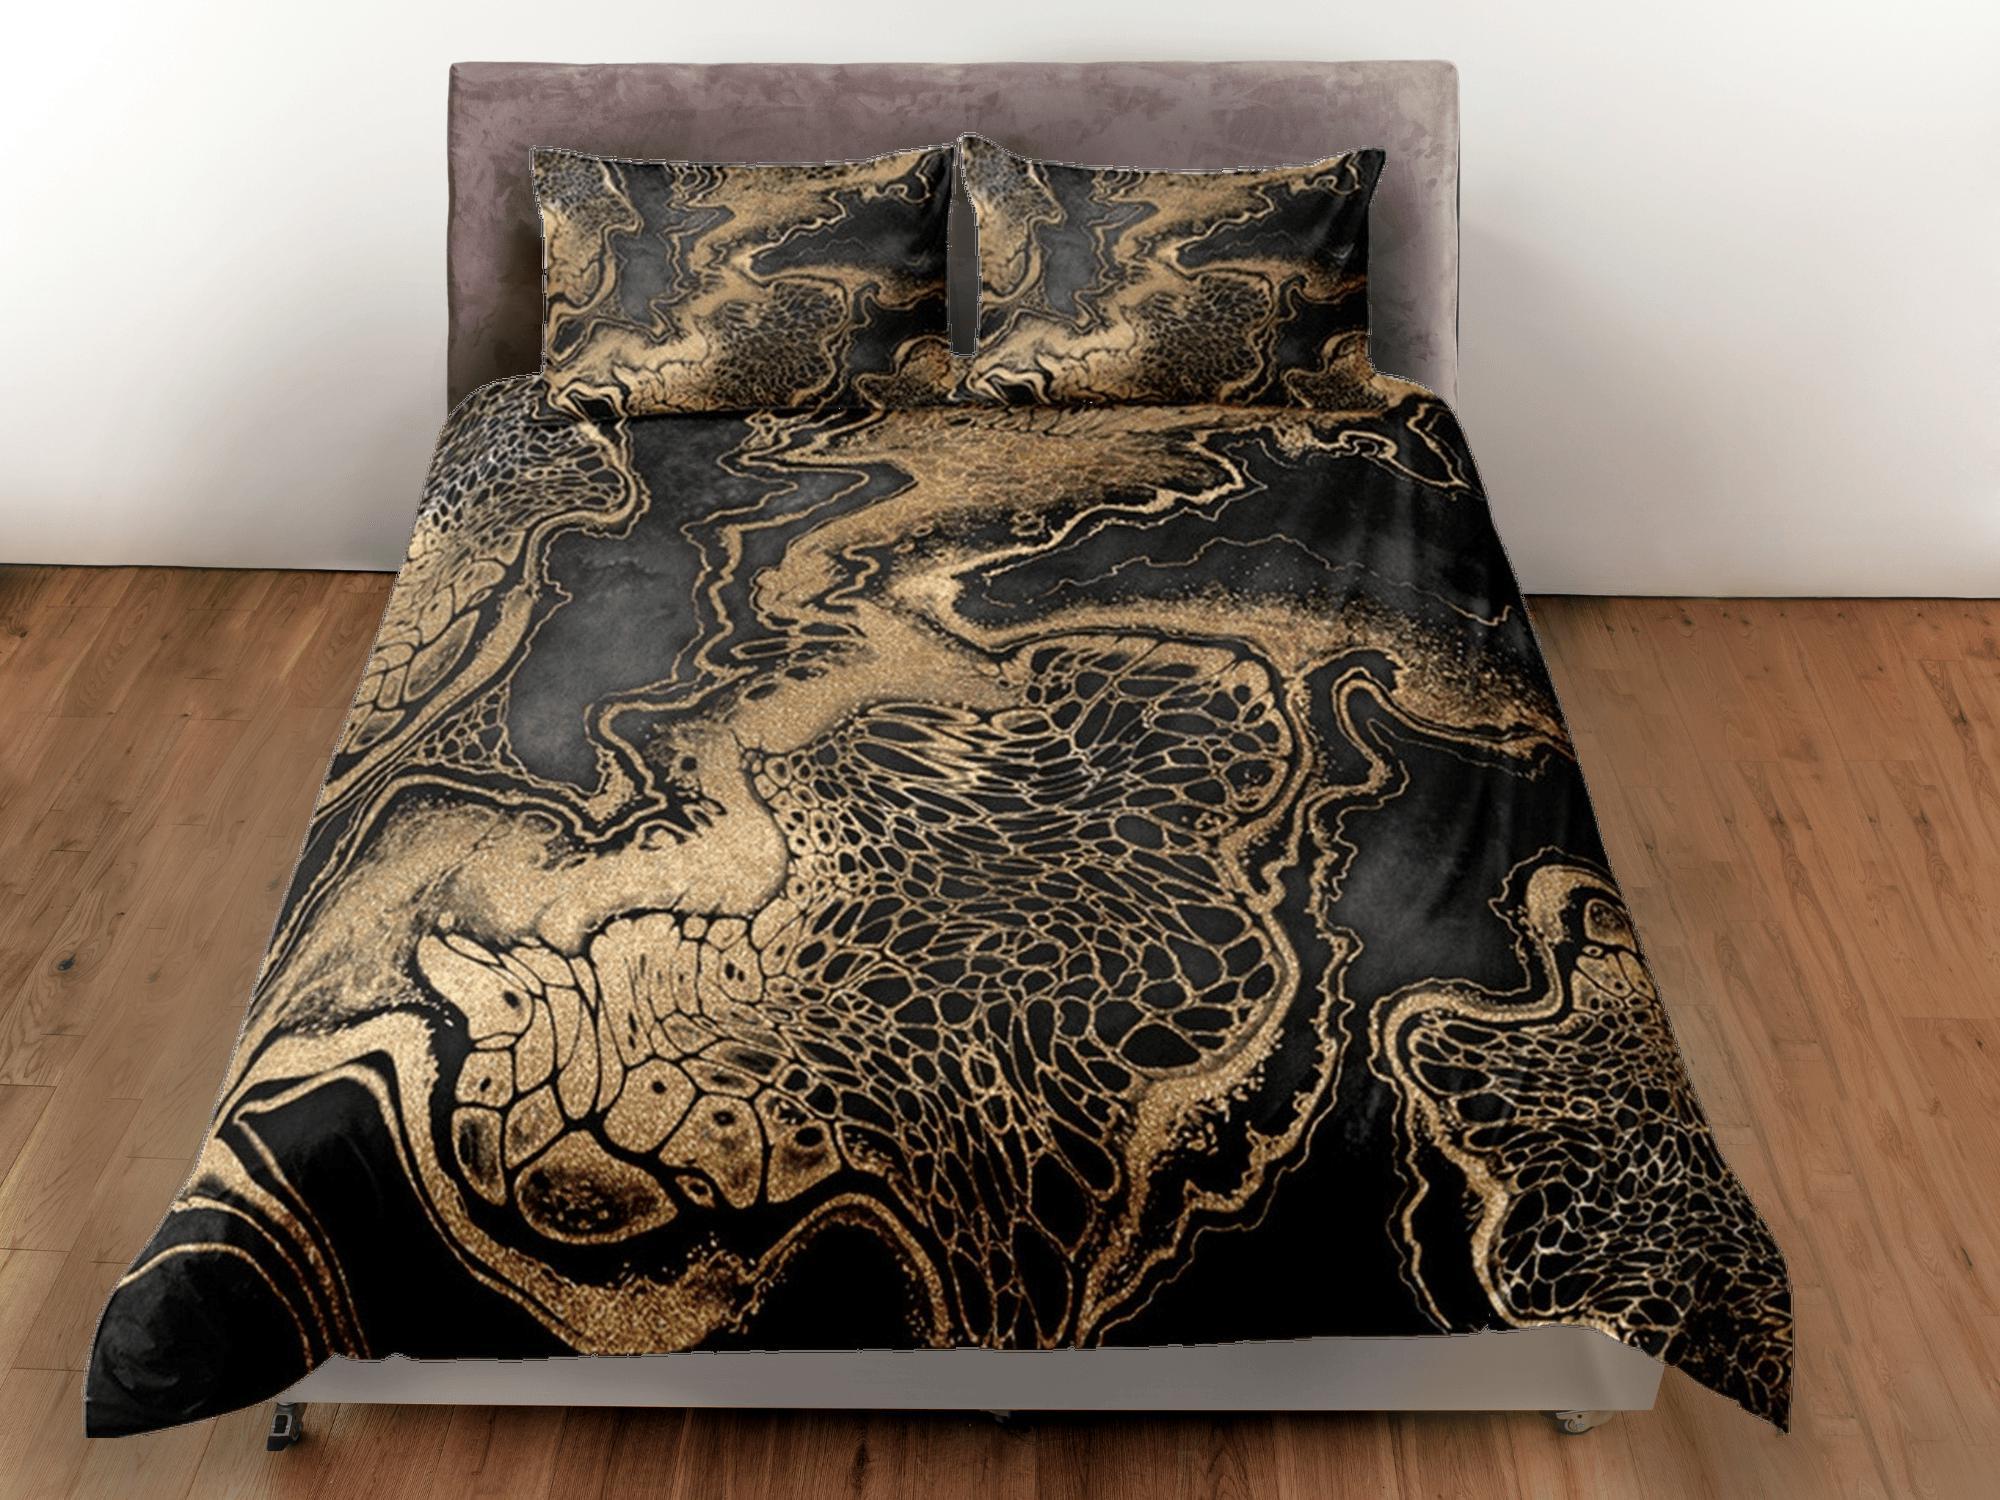 daintyduvet Gold Marble Swirl Black Duvet Cover Set Colorful Bedspread, Dorm Bedding & Pillowcase, King Duvet Cover Full, Comforter Queen